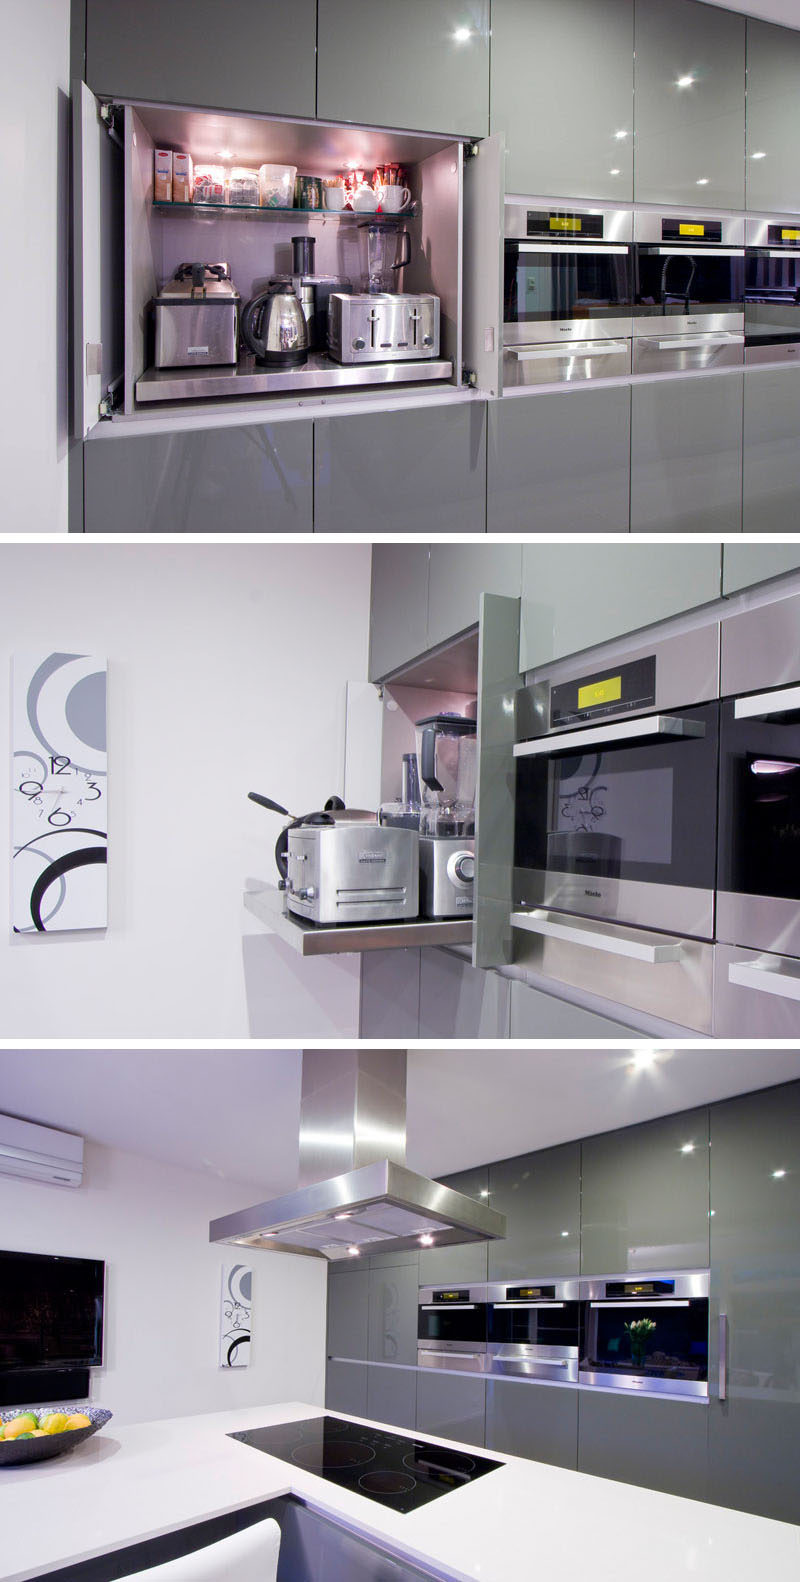 Идея дизайна кухни - храните свою кухонную технику в специальном гараже для бытовой техники // Основная полка в этом гараже для бытовой техники выдвигается, чтобы облегчить доступ к бытовой технике, хранящейся сзади. #ApplianceGarage #KitchenIdeas #KitchenDesign